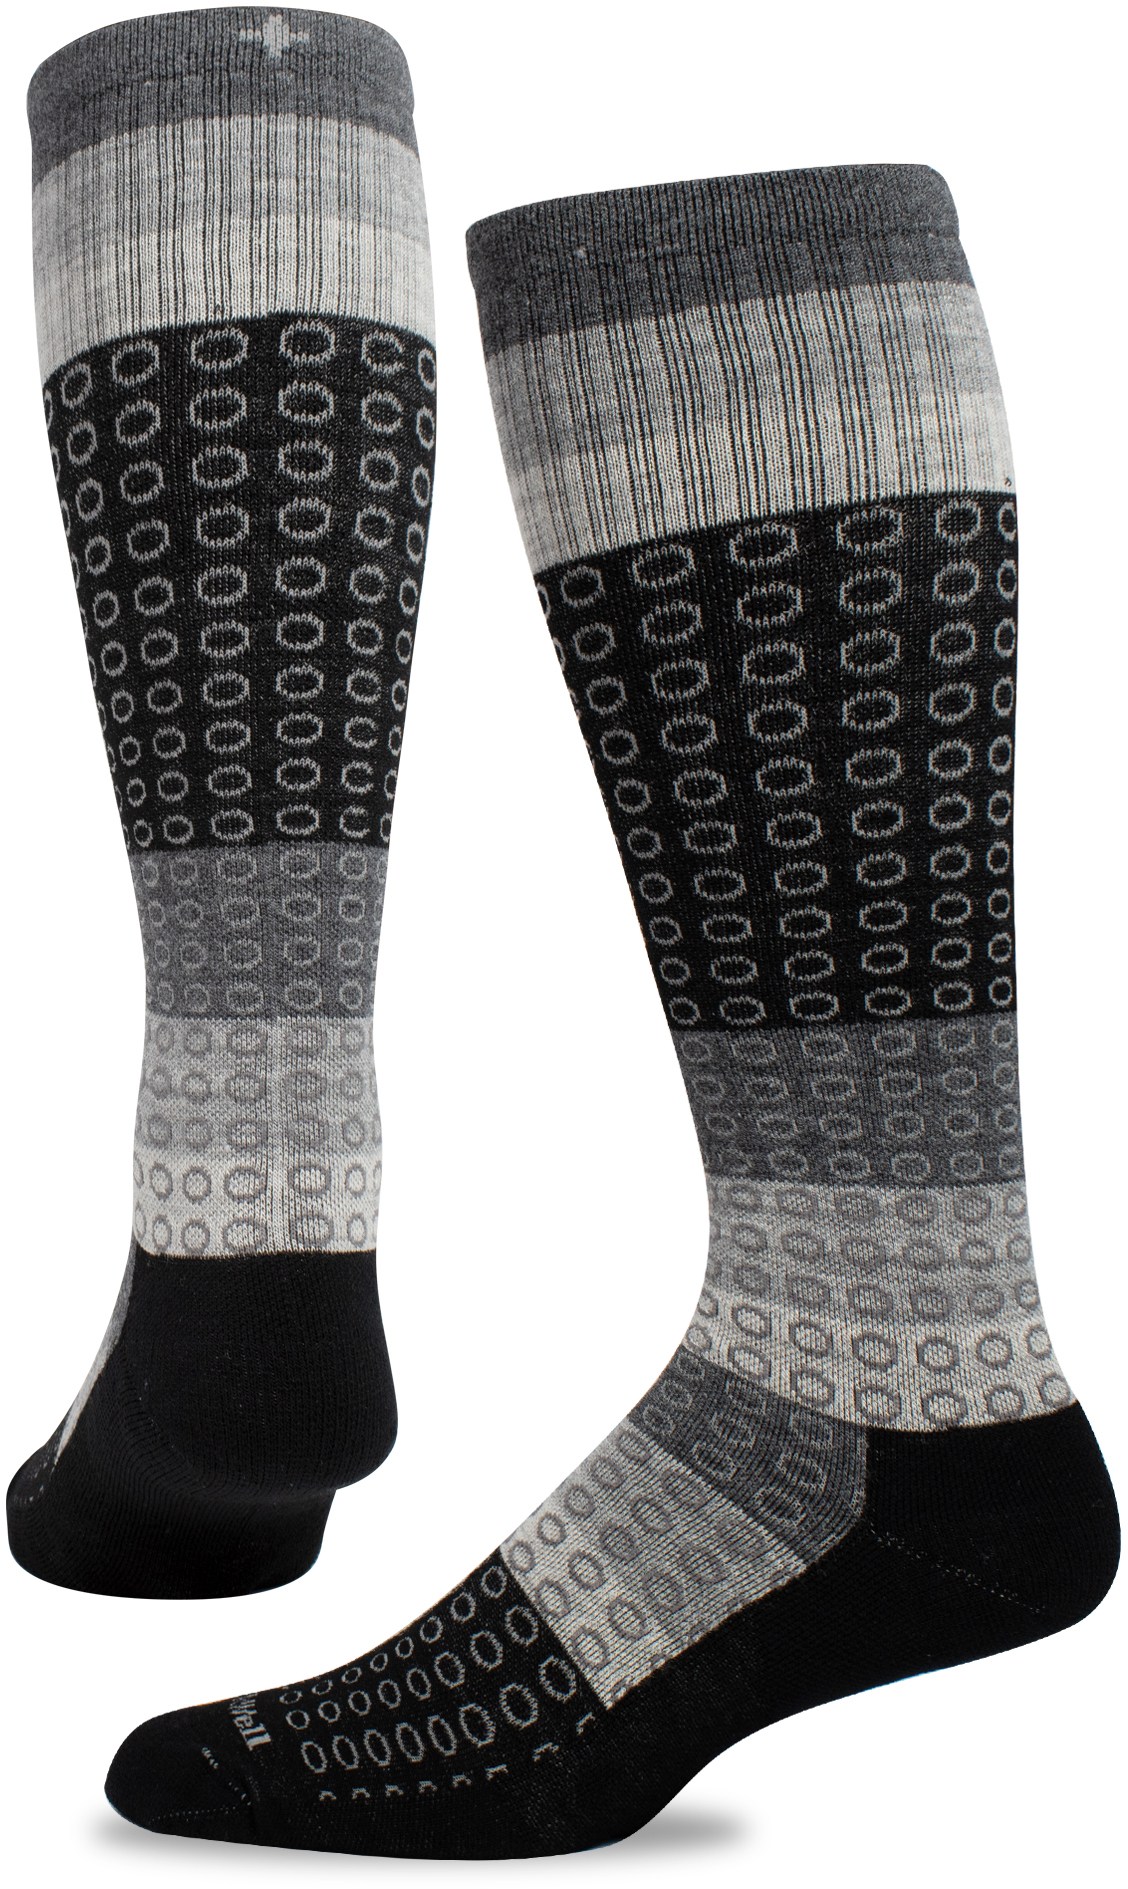 Компрессионные носки полного круга, широкие по размеру икры, женские Sockwell, черный